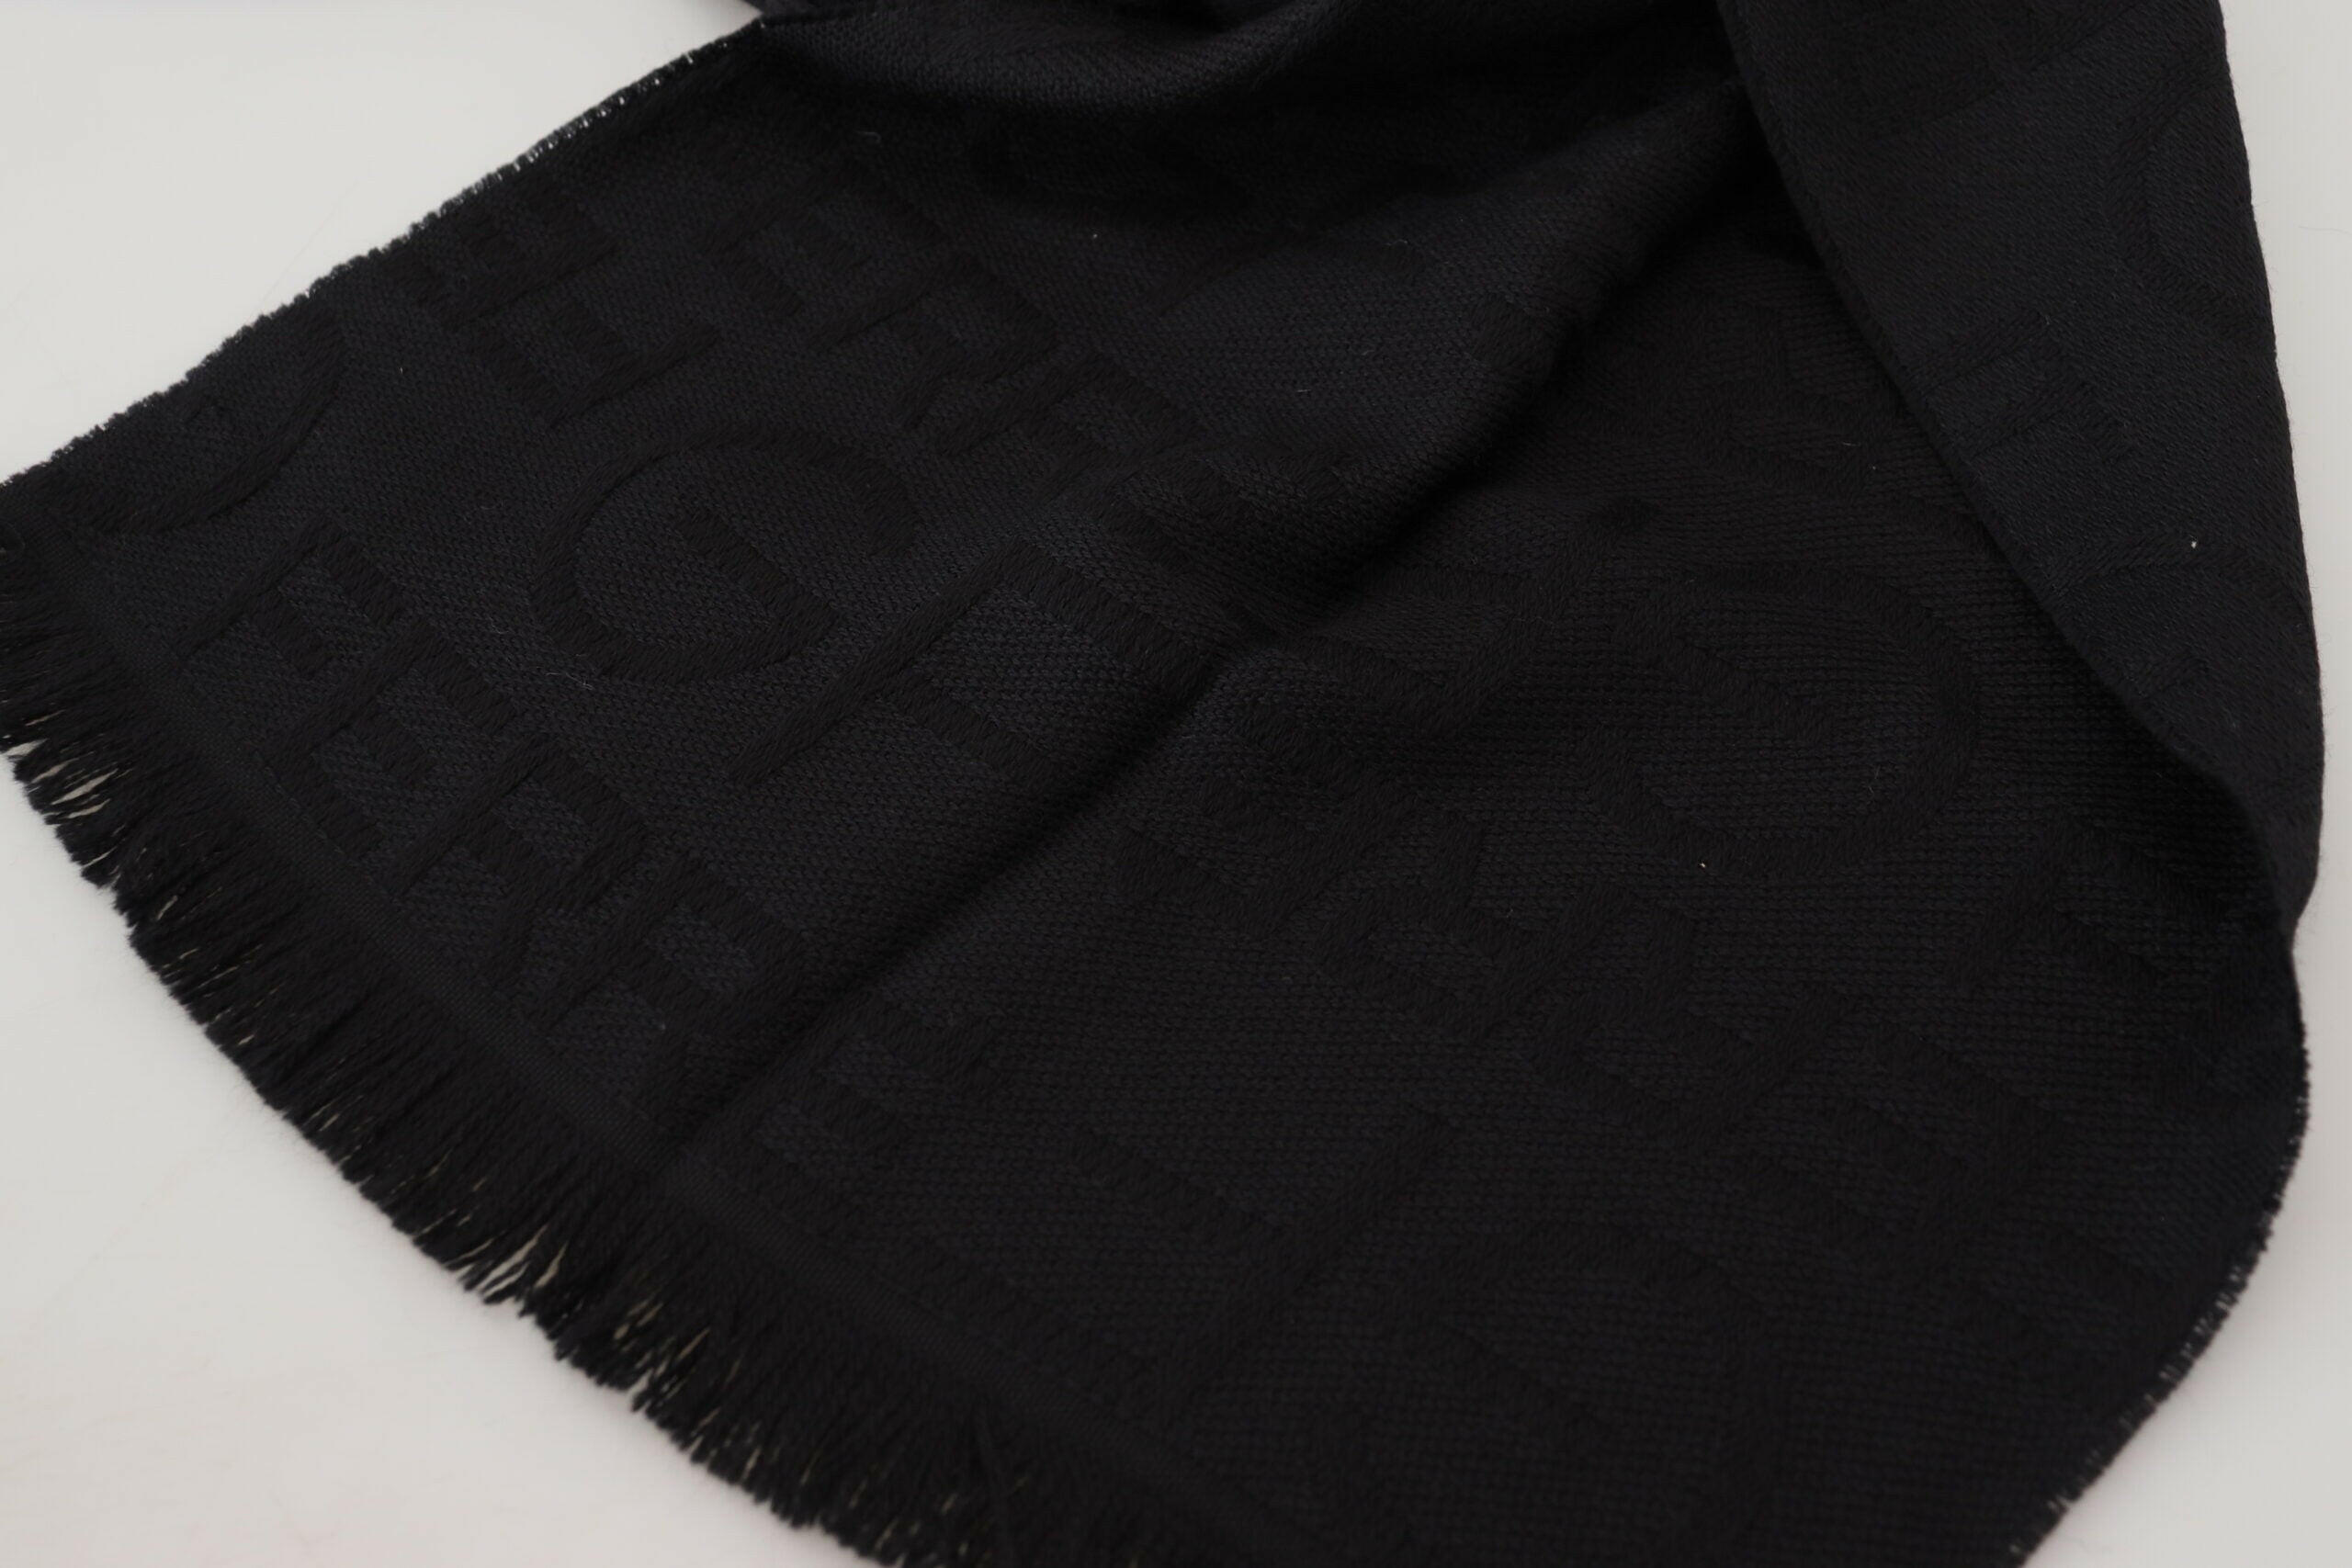 GF Ferre Black Wool Neck Wrap Shawl Fringes Scarf - GENUINE AUTHENTIC BRAND LLC  